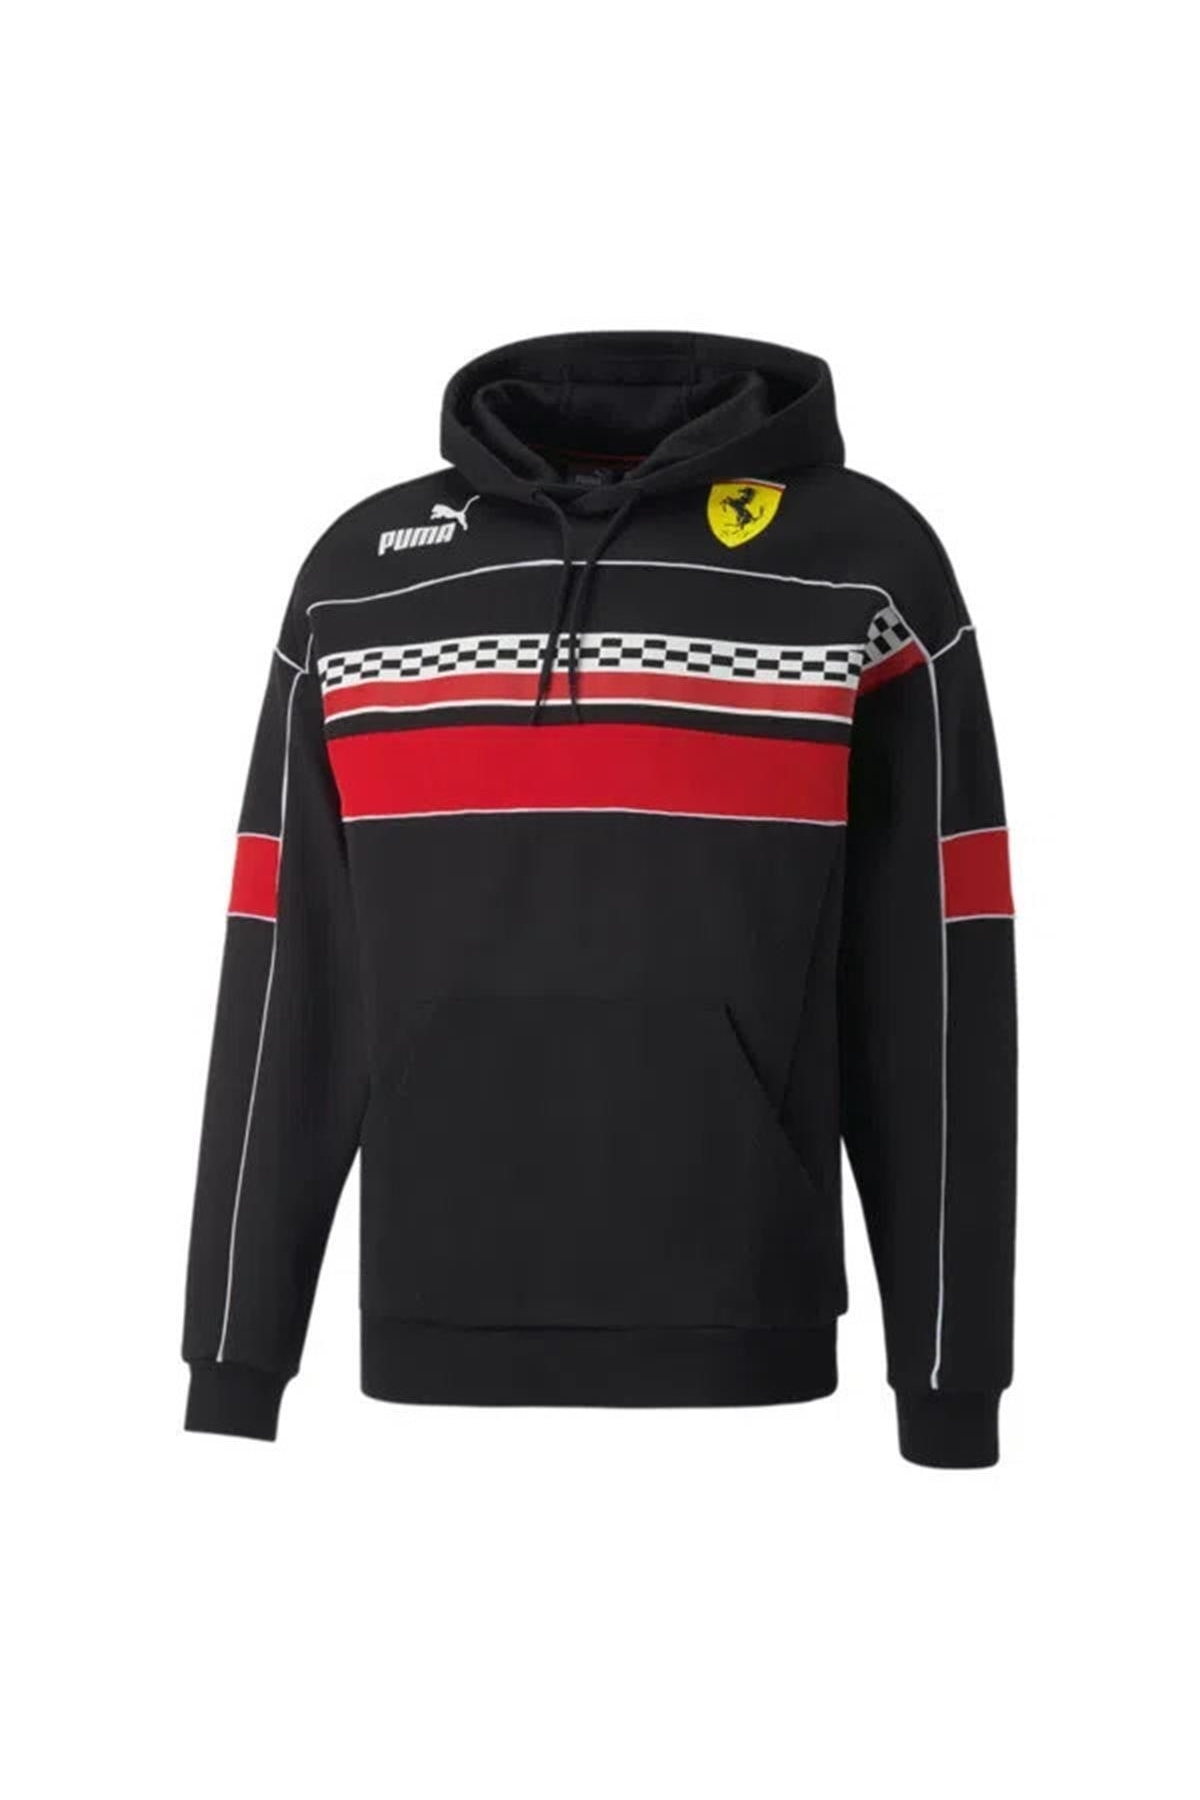 Puma Scuderia Ferrari Race Sds Hoodie Men 535817-01